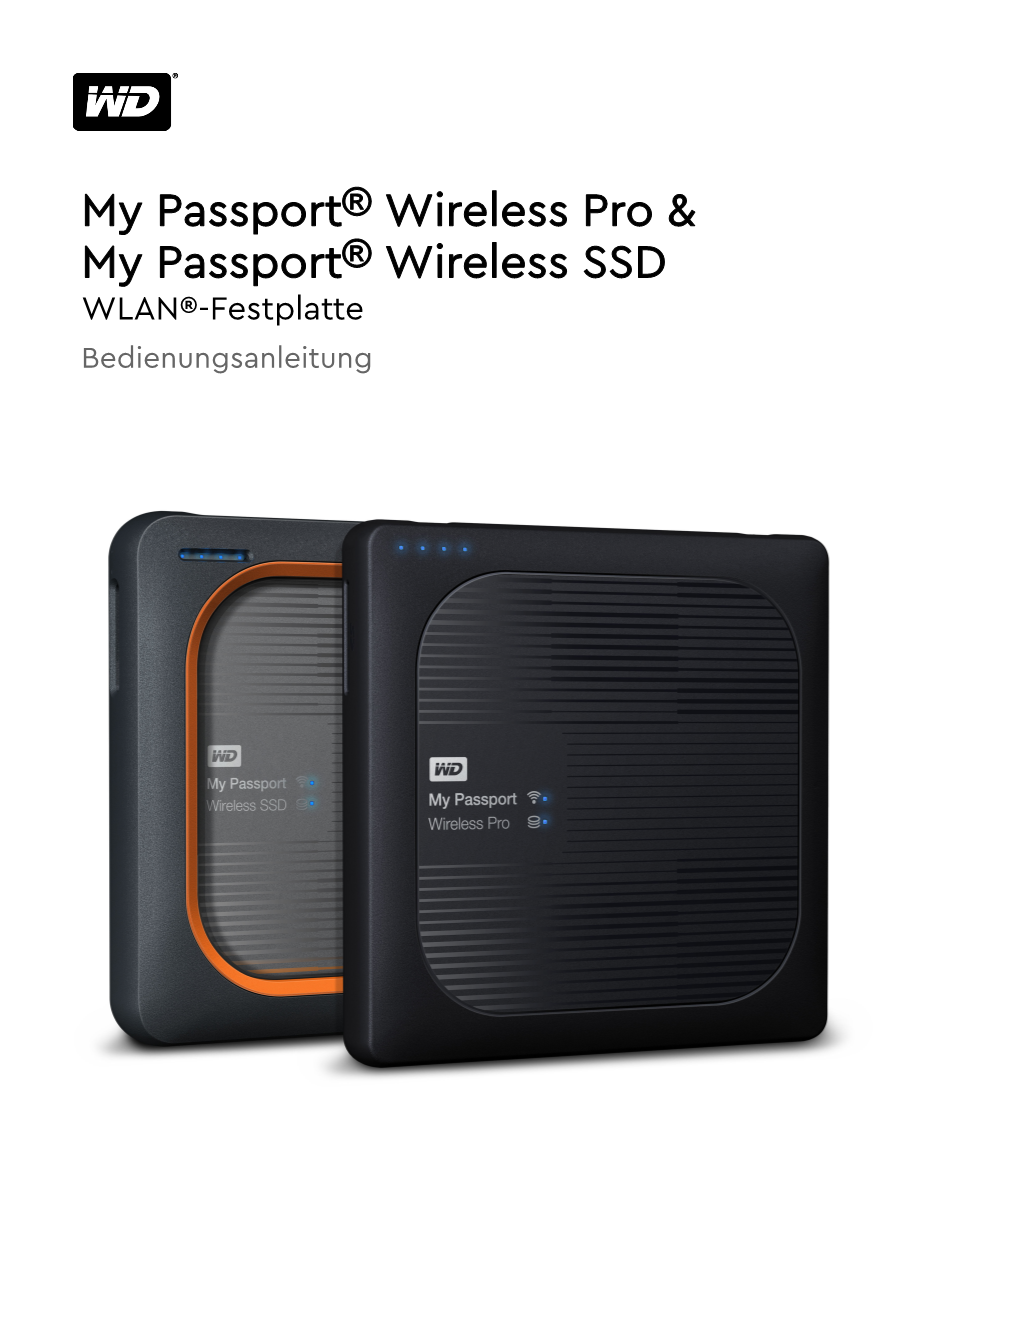 My Passport Wireless Pro/My Passport Wireless SSD (Von Oben)